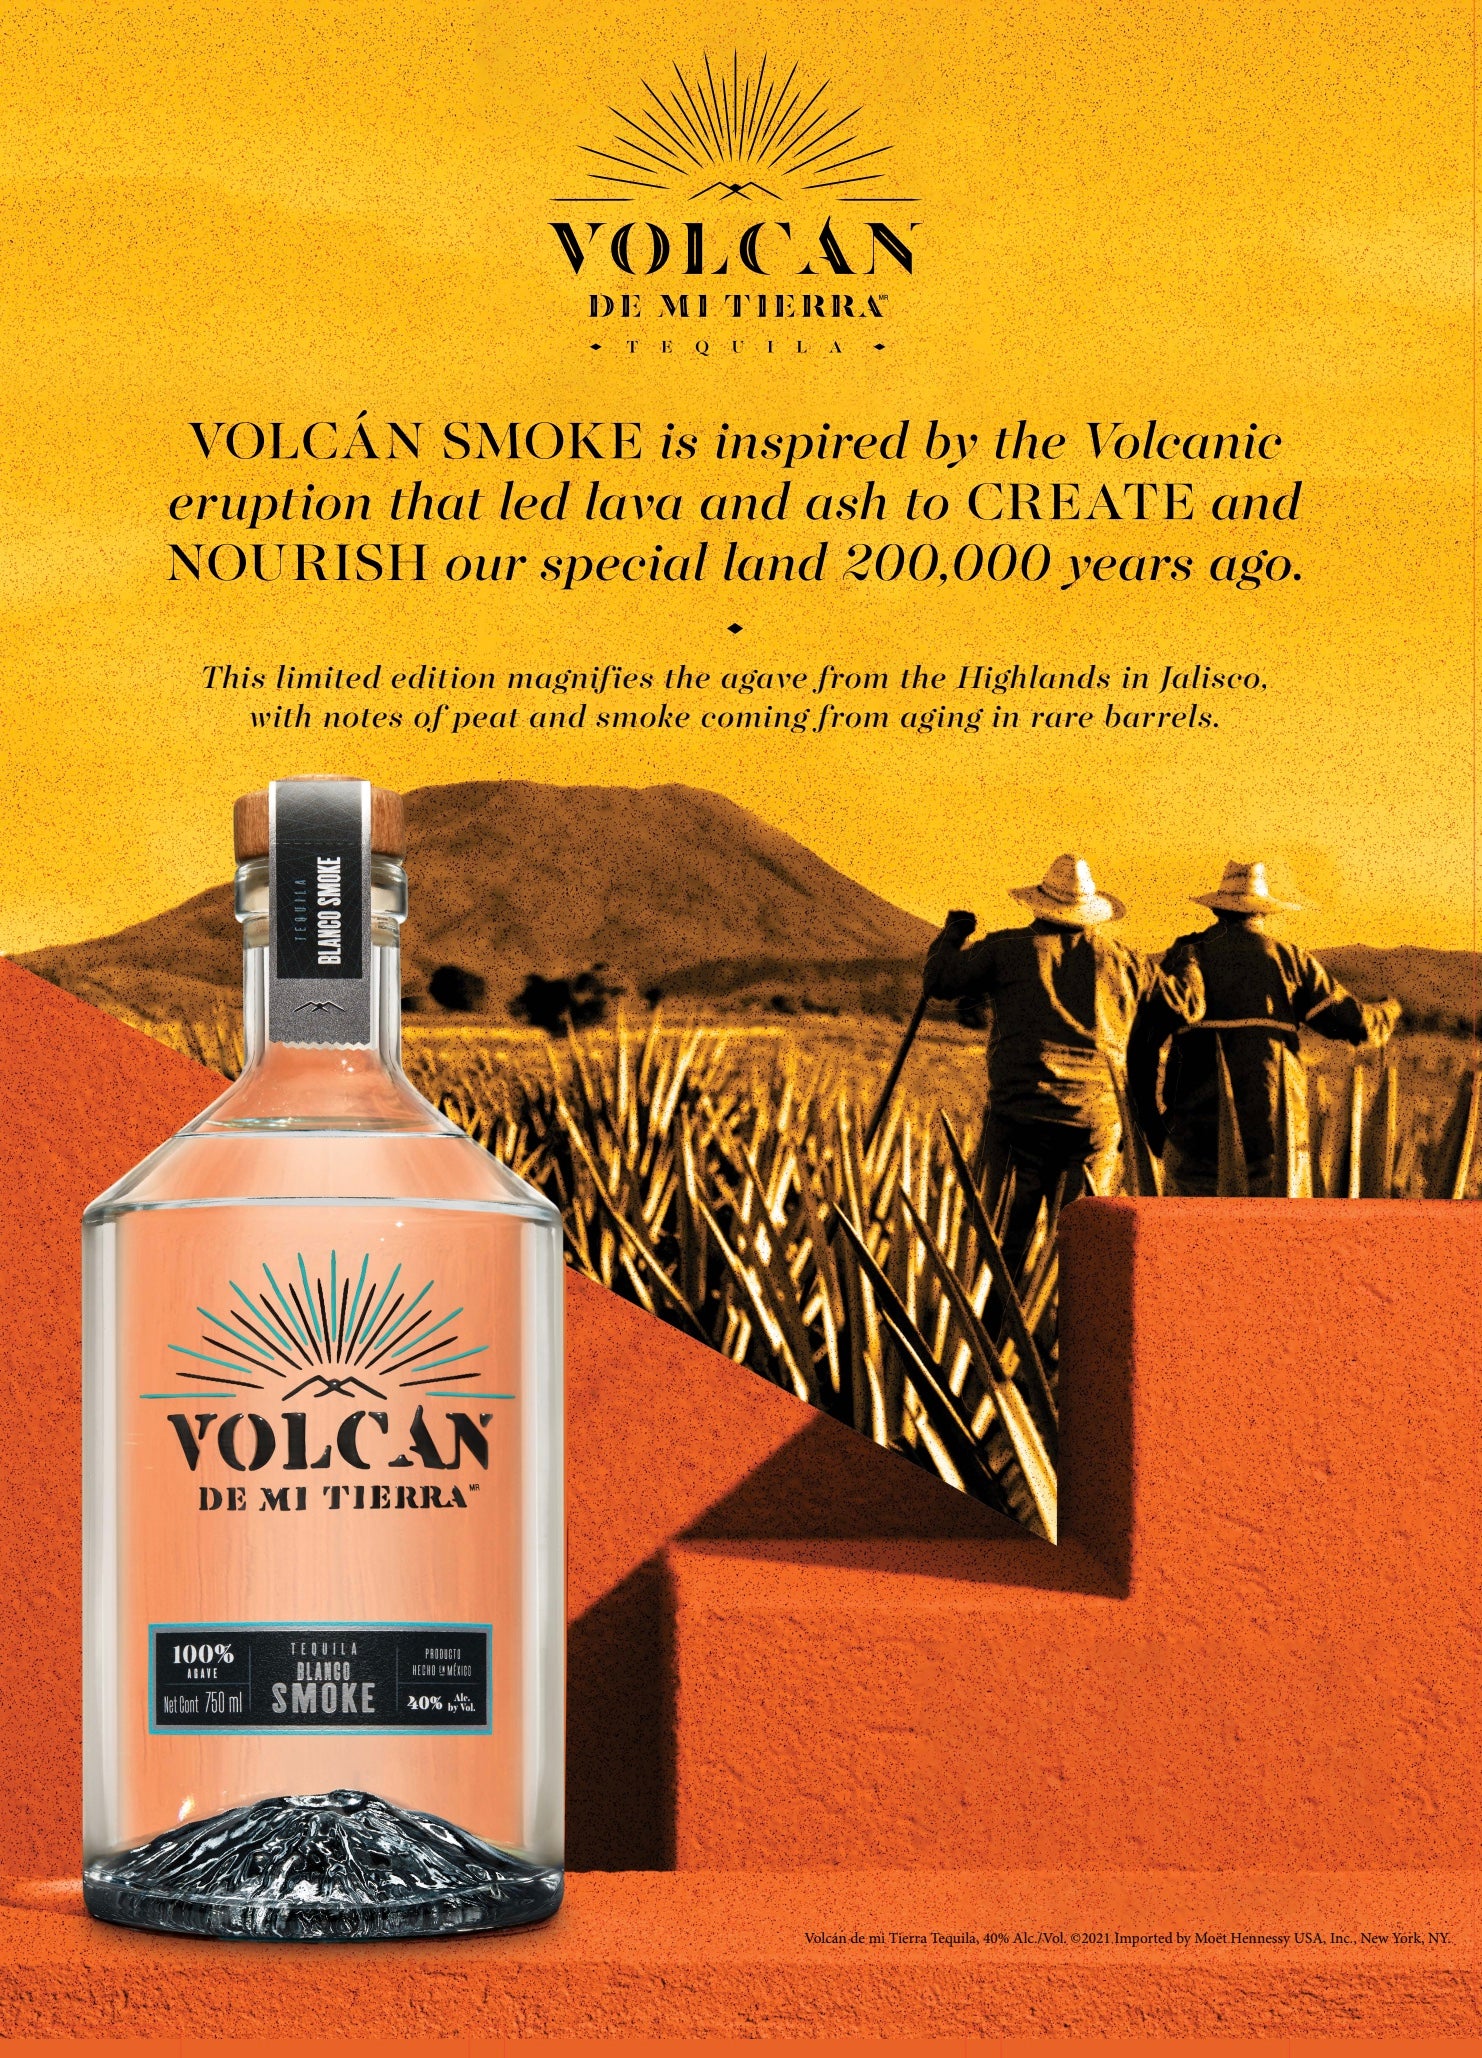 Volcán De Mi Tierra Blanco Smoke Tequila Limited Edition